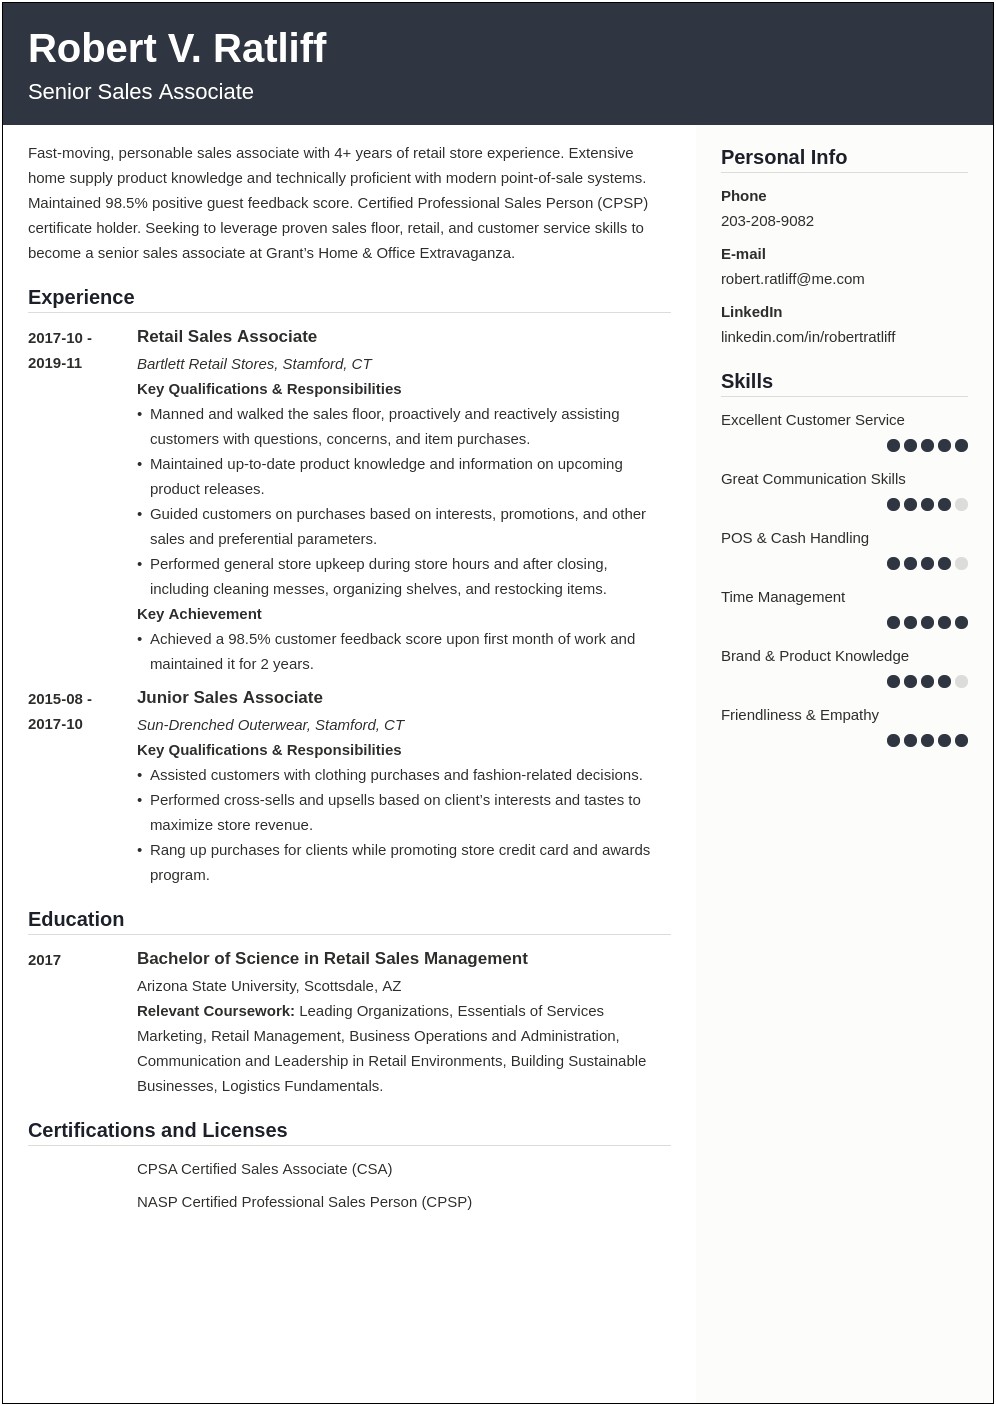 Resume Job Description For Staples Floor Associate